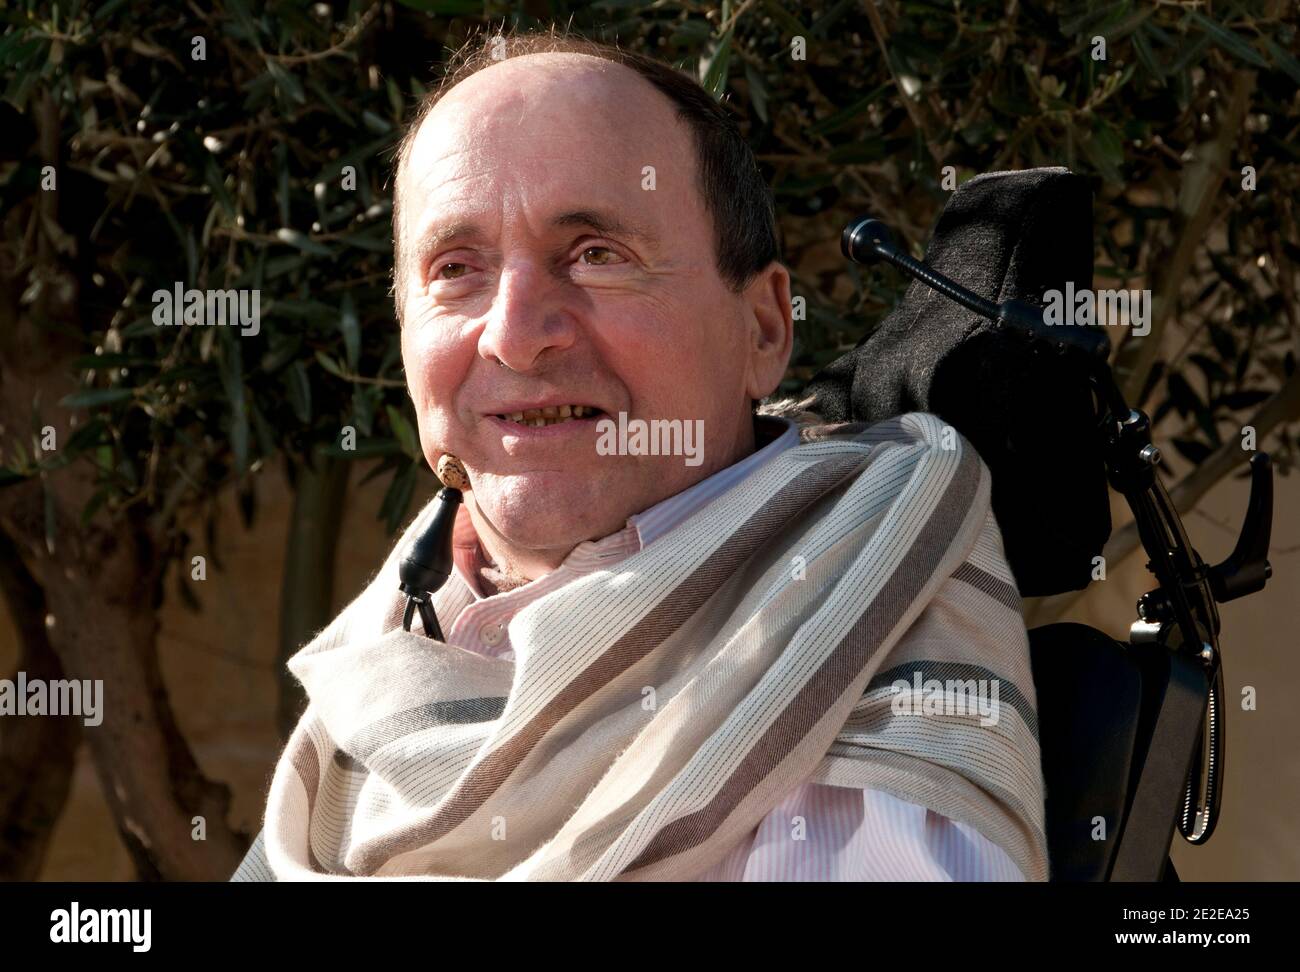 EXKLUSIV - Philippe Pozzo di Borgo, der nach einem Paragliding-Unfall im  Jahr 1993 quadriplegic wurde, posiert in seinem Haus in Essaouira, Marokko,  15. November 2011. Seine Geschichte inspirierte den am 2011. November